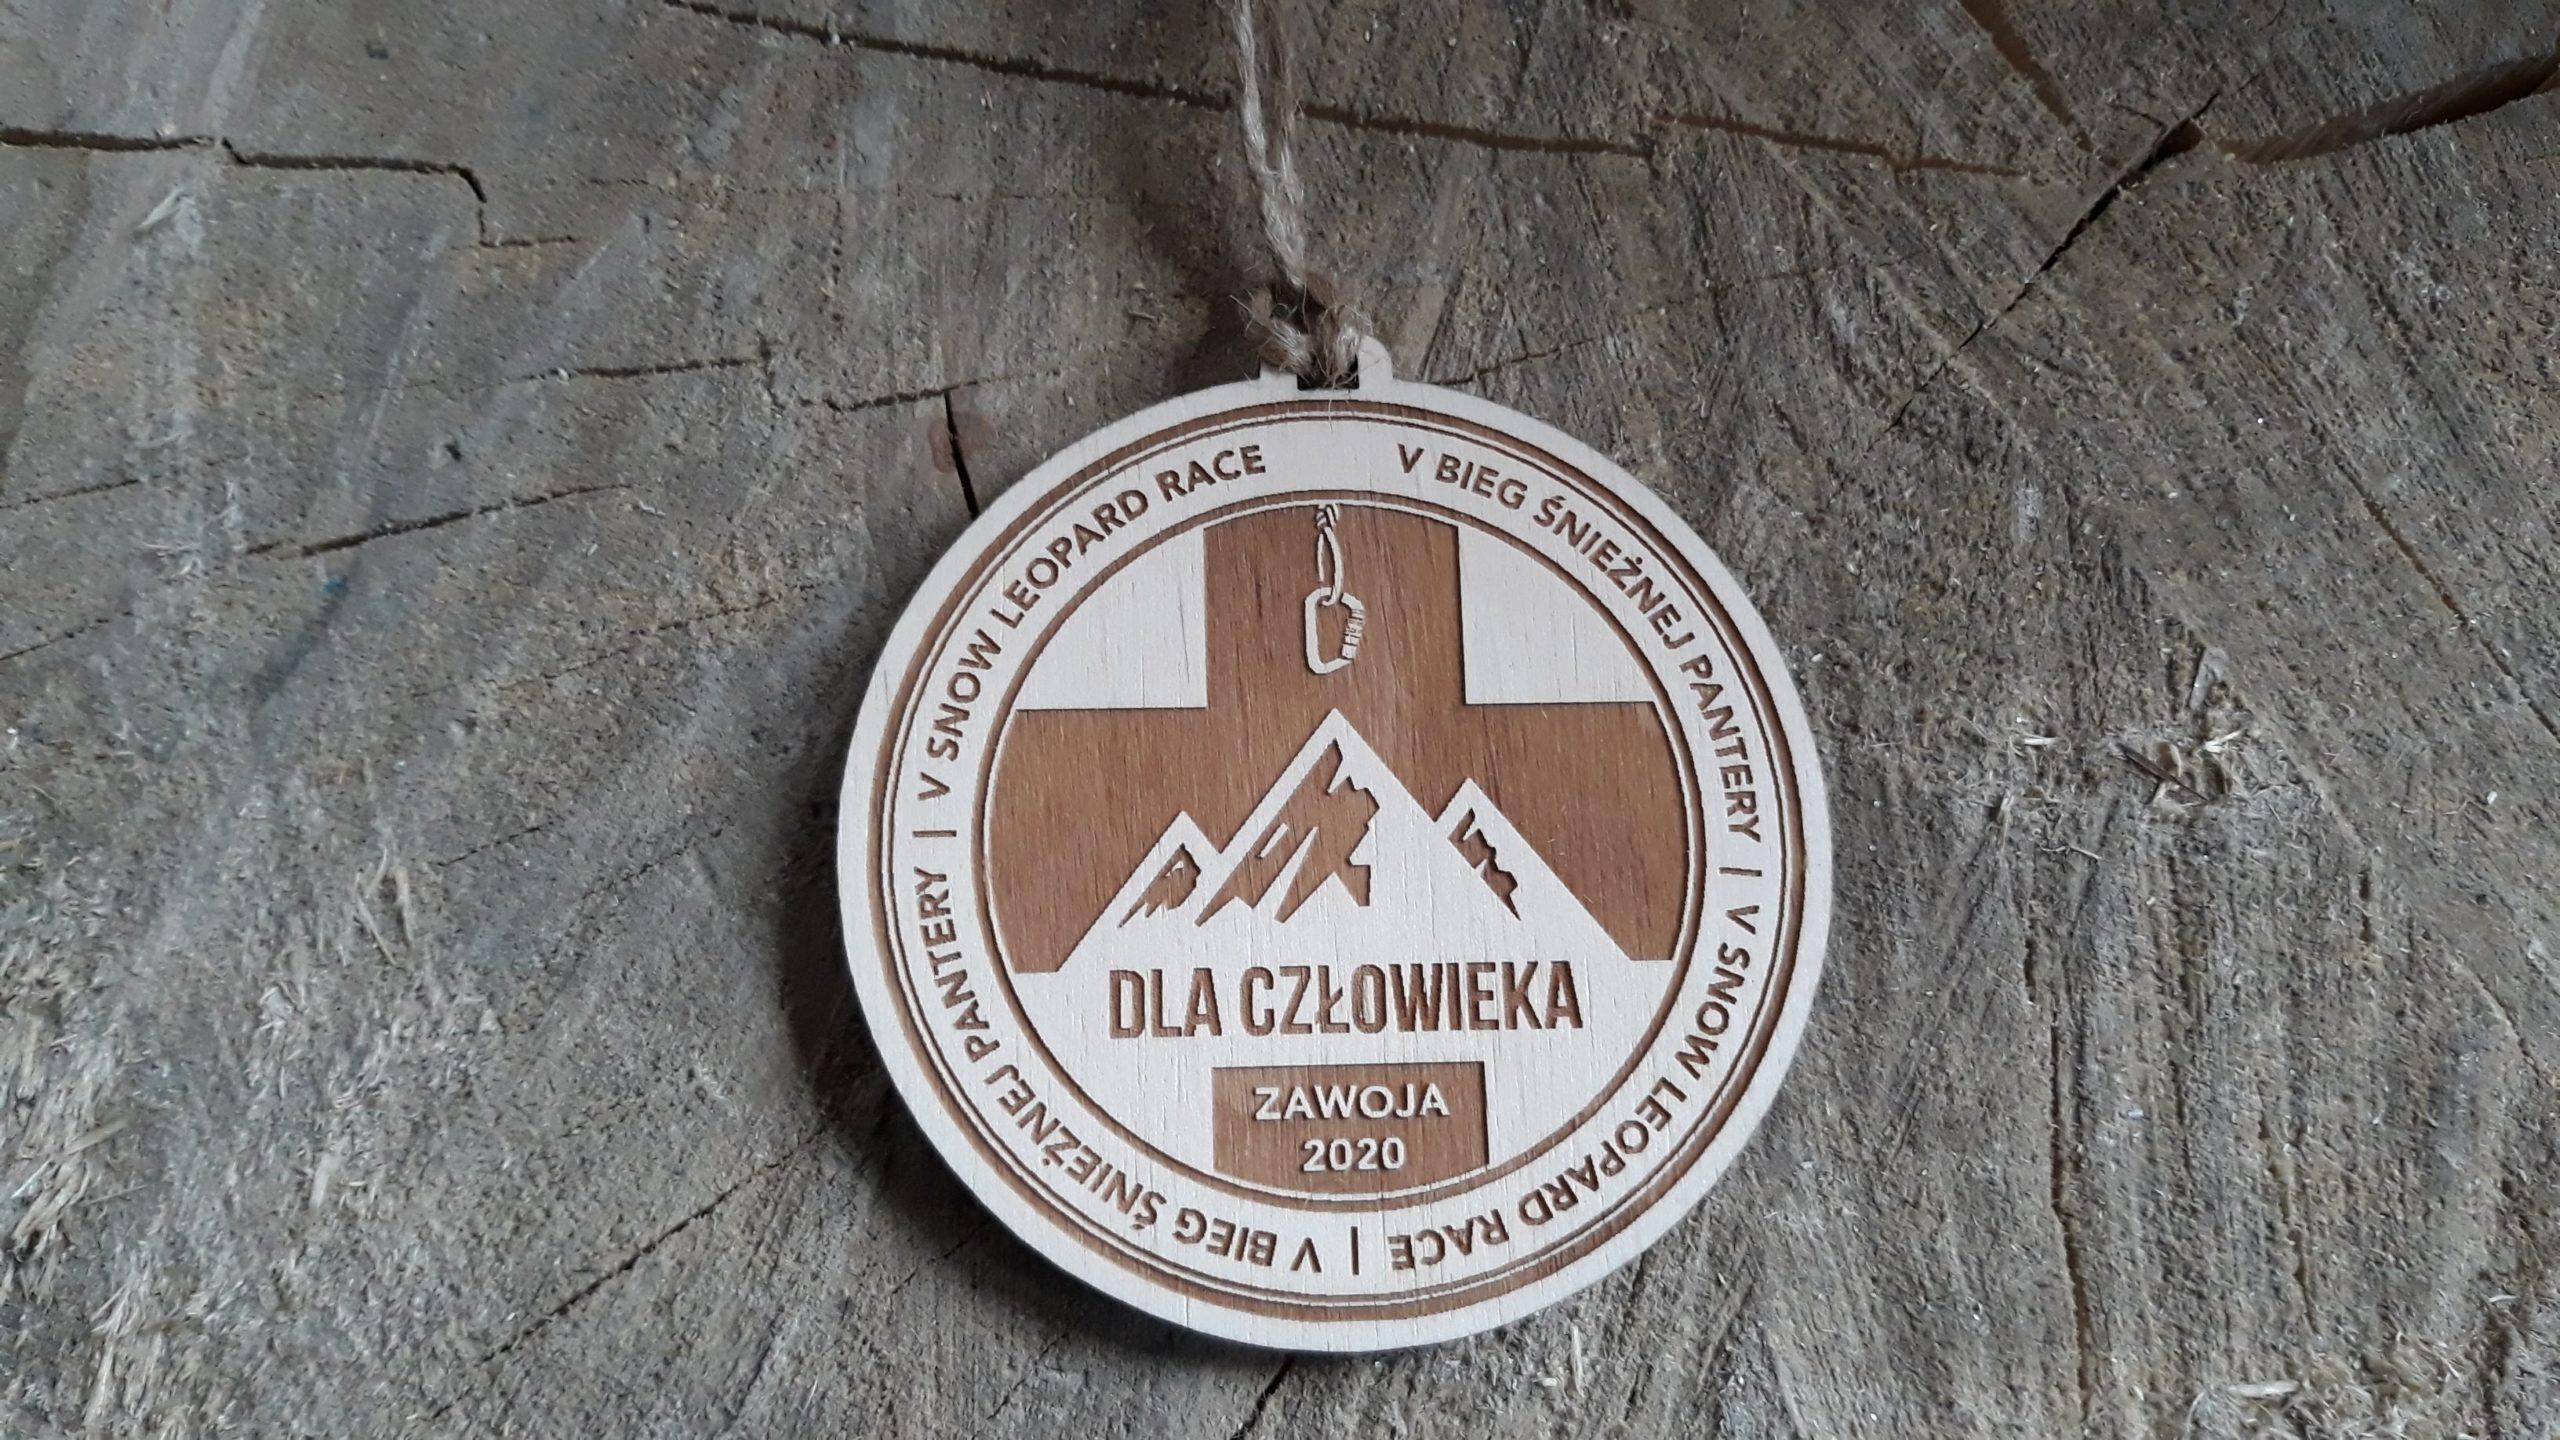 V Bieg Śnieżnej Pantery – drewniane medale